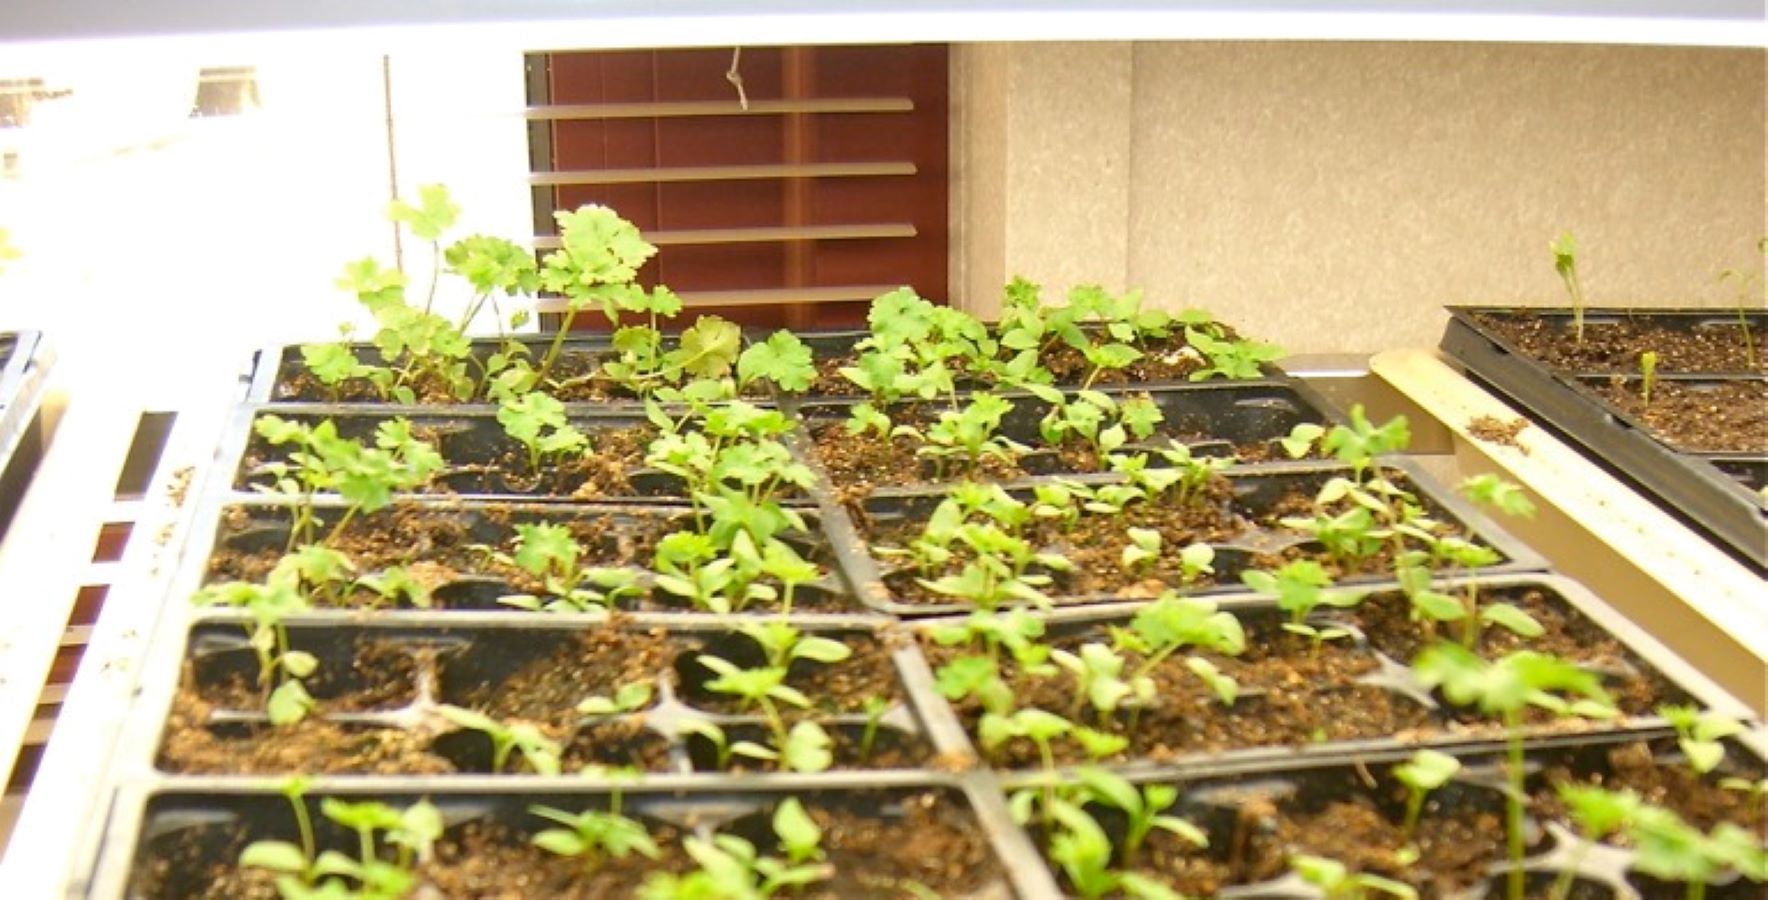 Seedlings in a flat